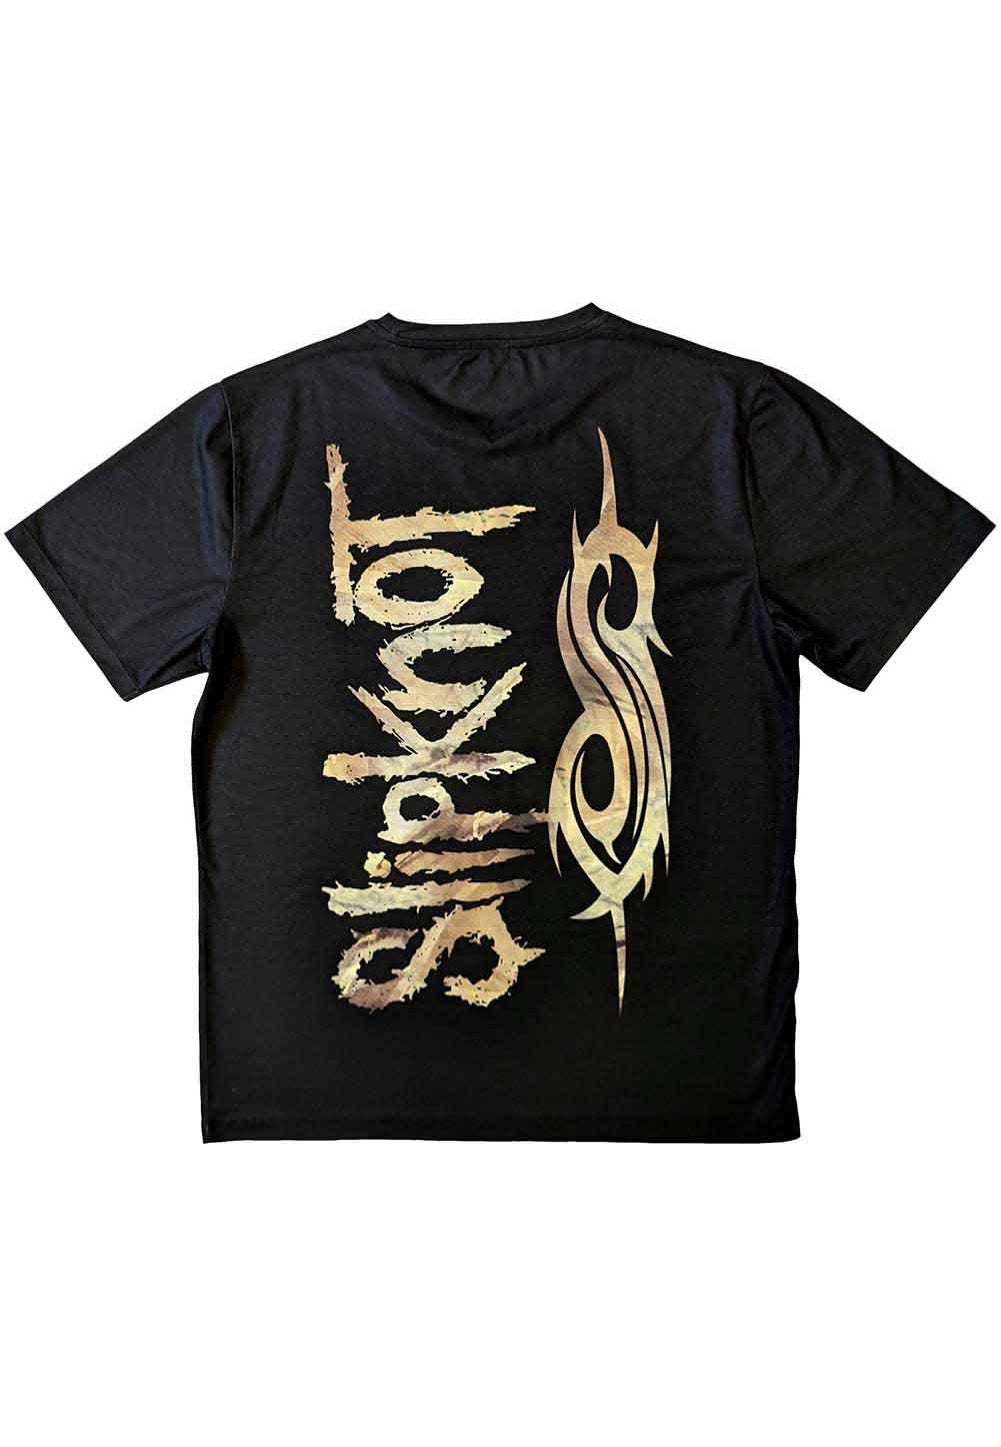 Slipknot - Profile - T-Shirt